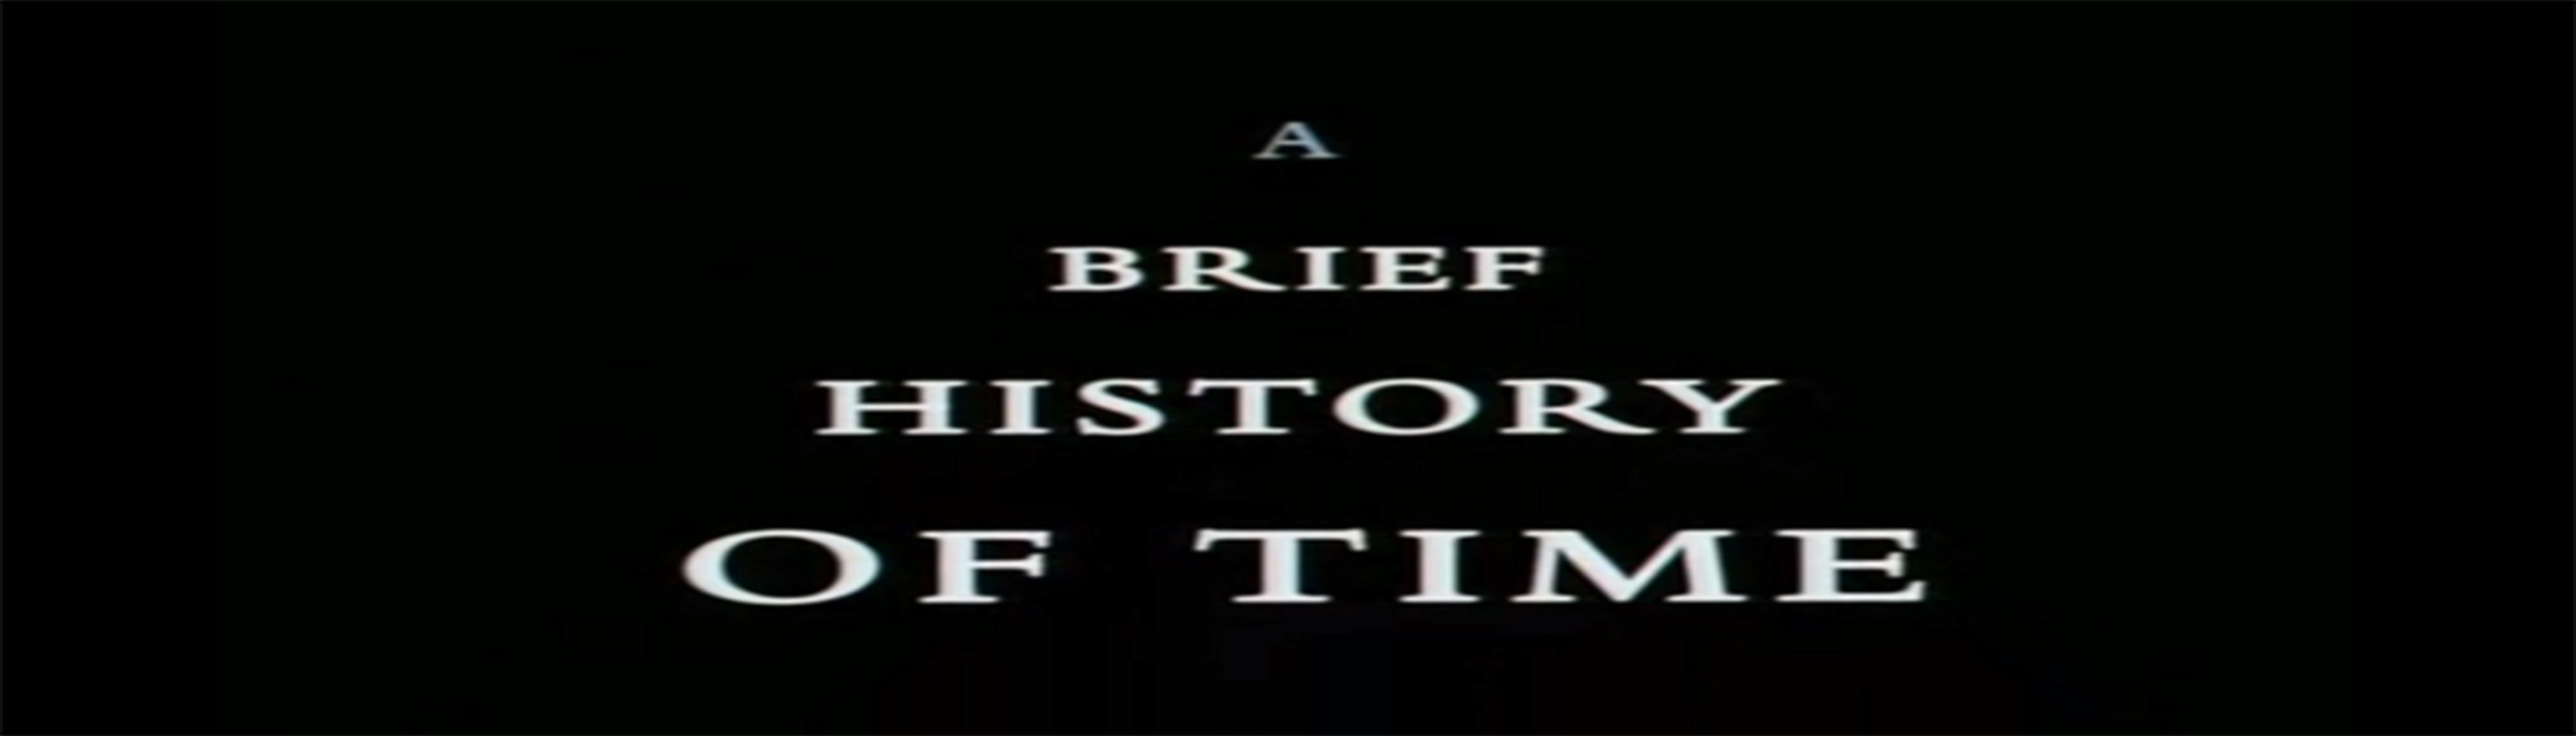 دانلود مستند A Brief History of Time با کیفیت 720p و 1080p